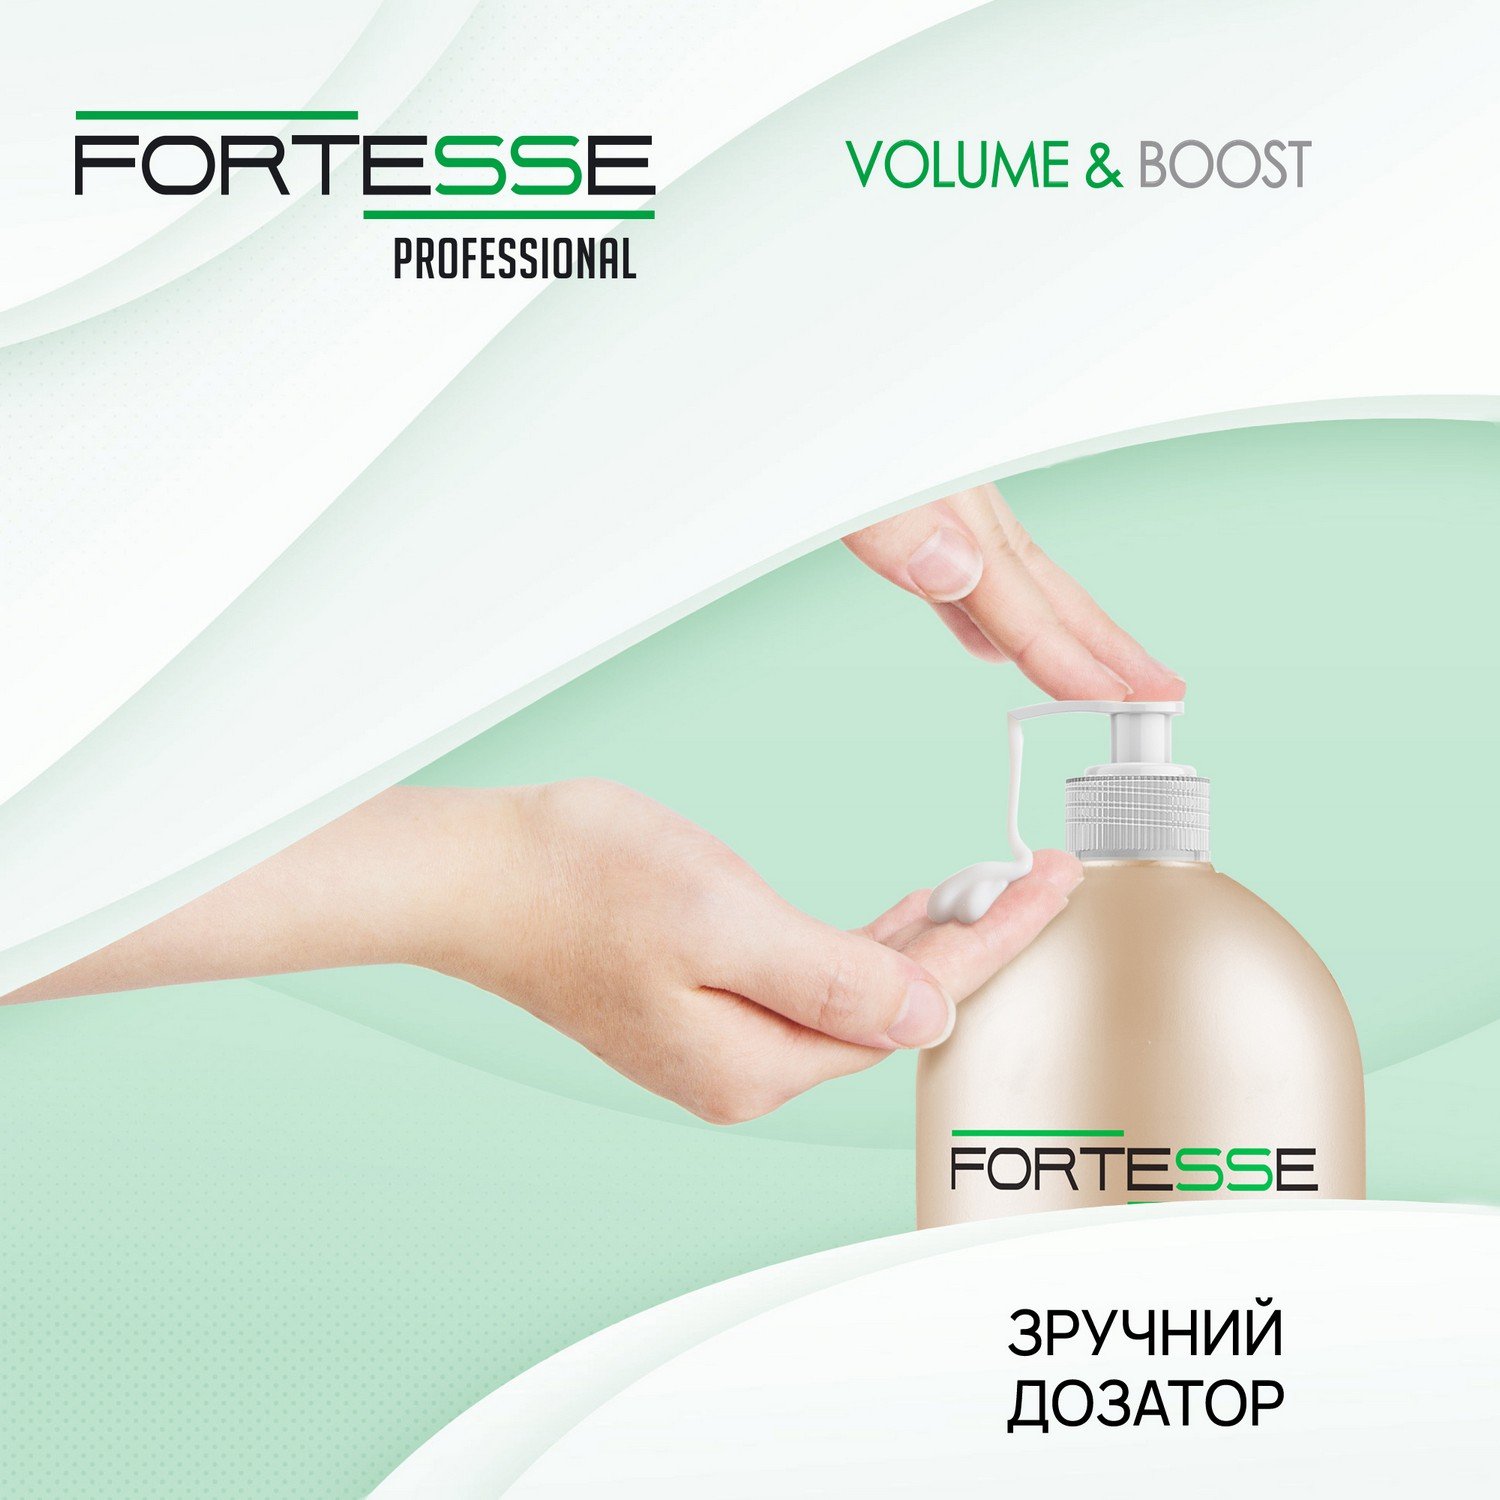 Шампунь Fortesse Professional Volume & Boost Об'єм, для тонкого волосся, з дозатором, 1000 мл - фото 4